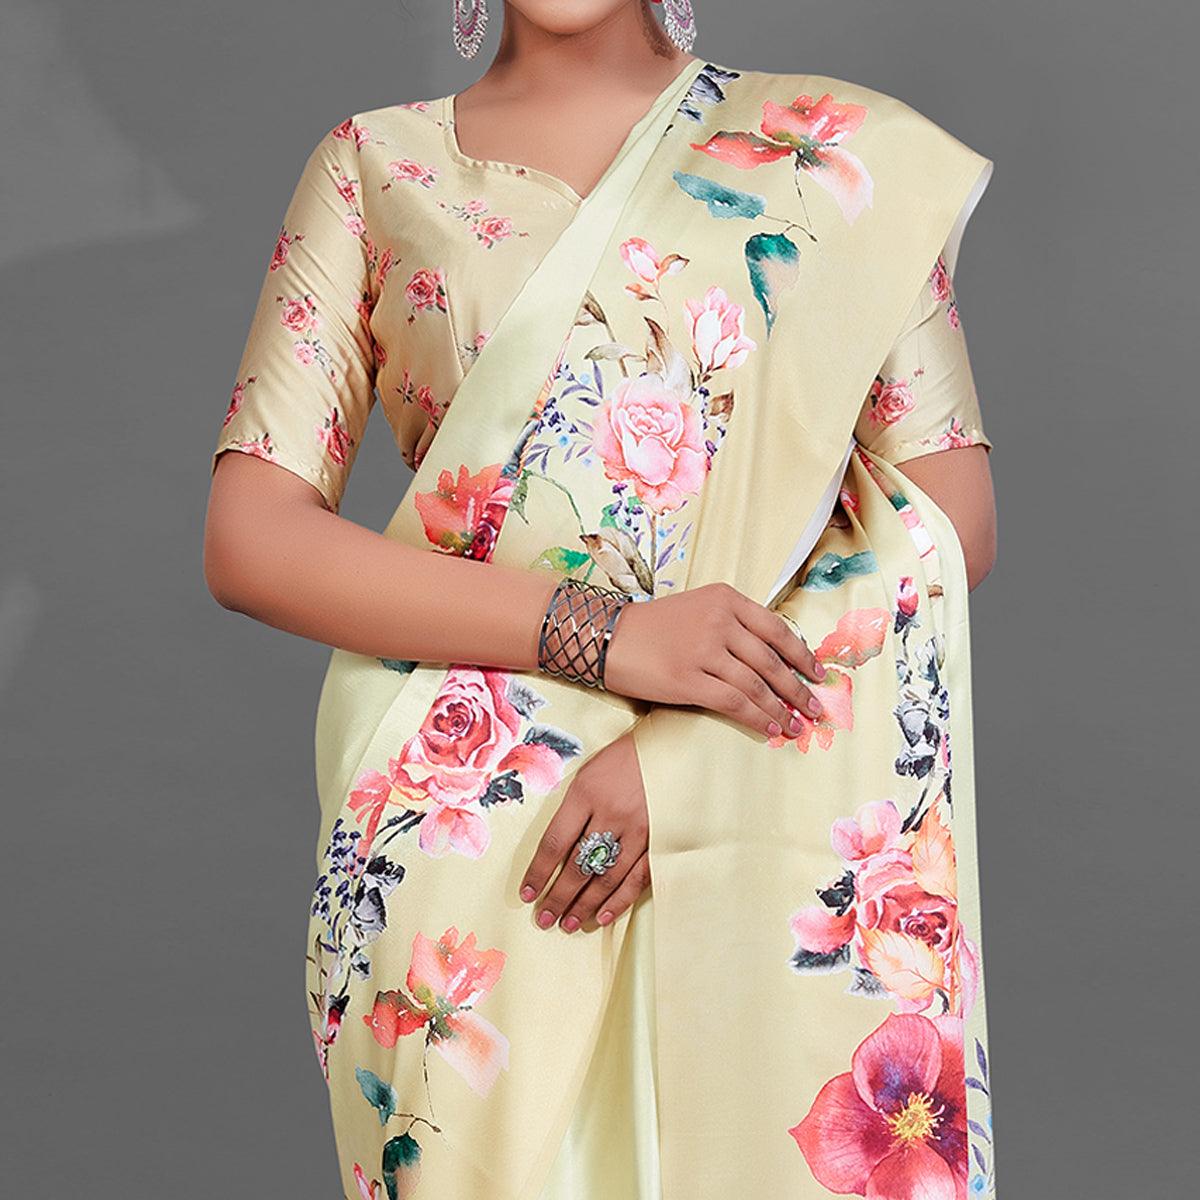 Yellow Casual Wear Printed Satin Silk Saree - Peachmode